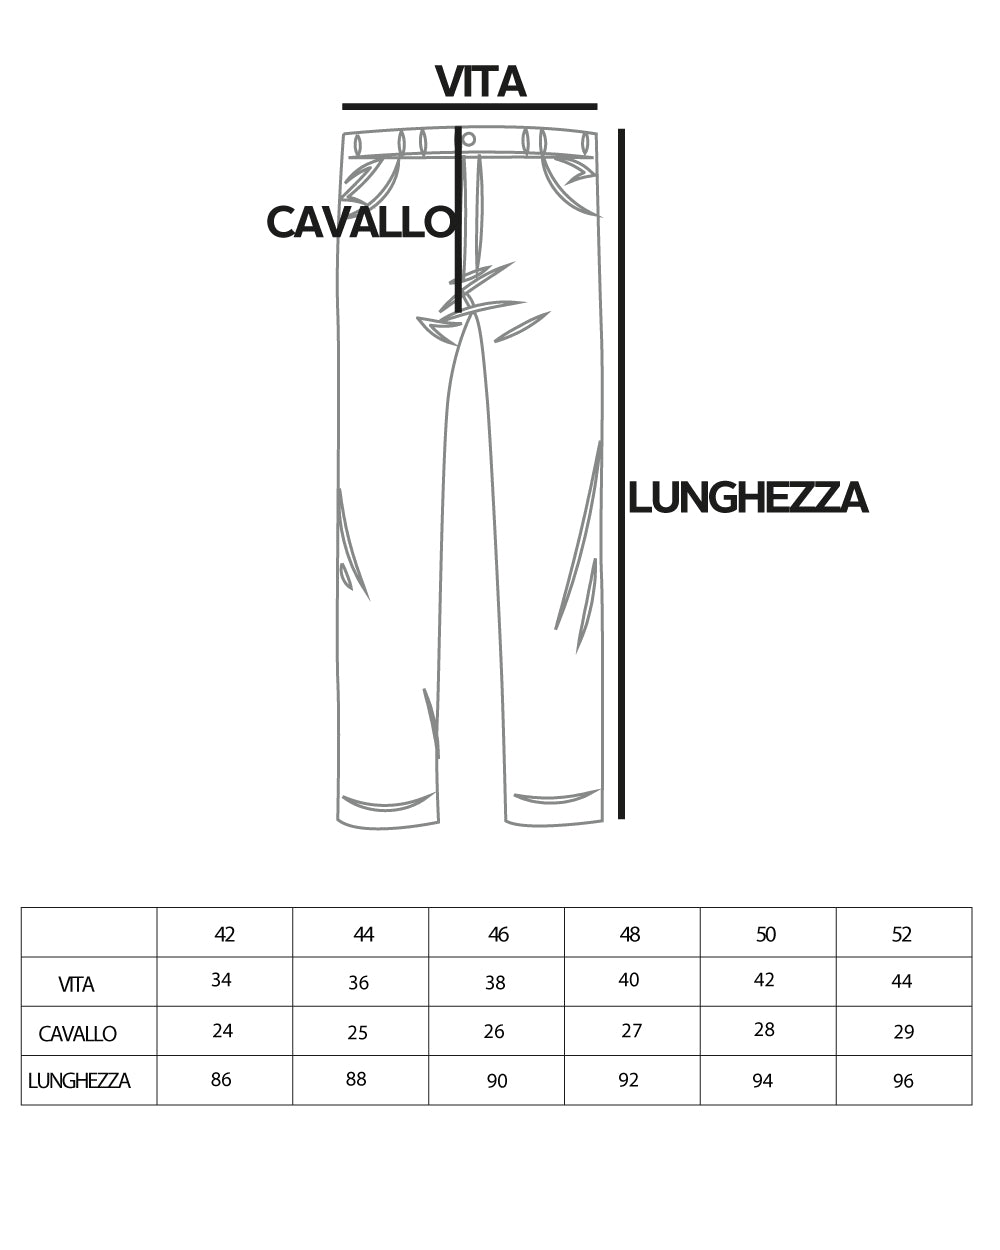 Pantaloni Uomo Tasca America Lungo Classico Casual Tinta Unita Beige GIOSAL-P5900A